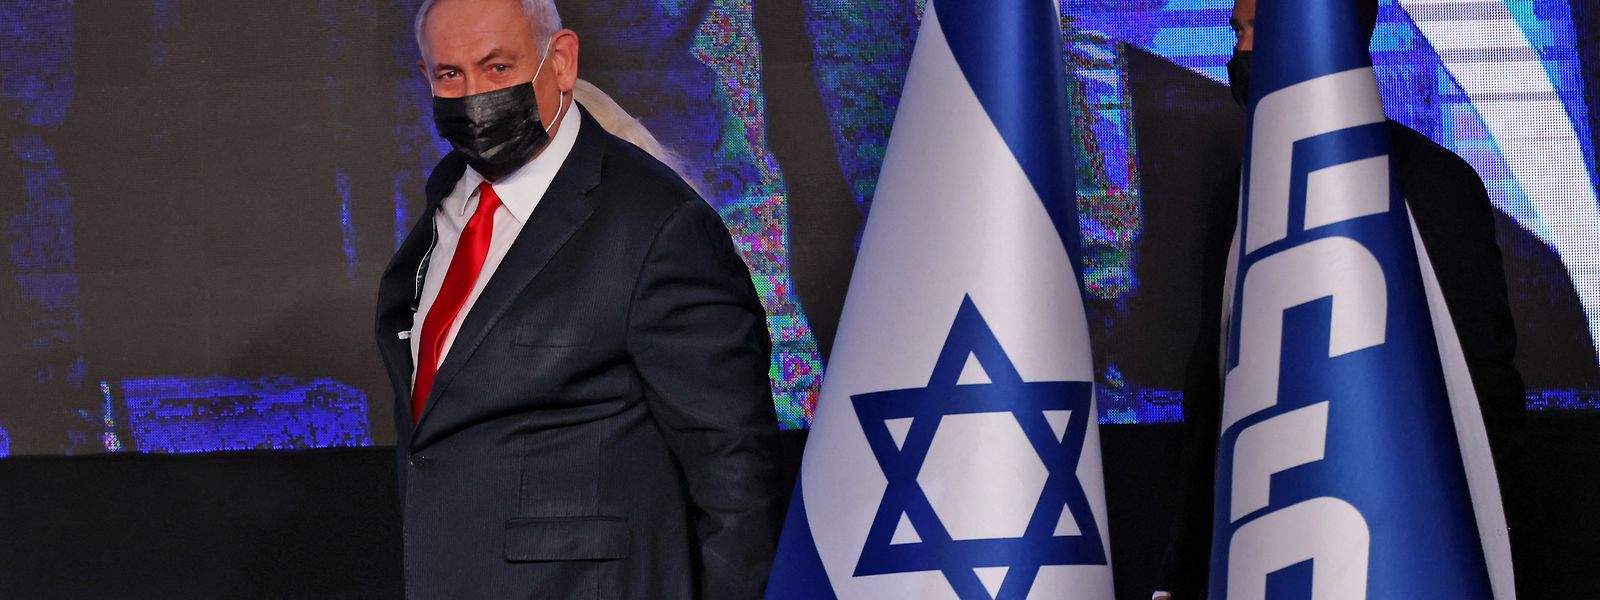 Die Chancen auf eine weitere Amtszeit für Benjamin Netanjahu schwinden.